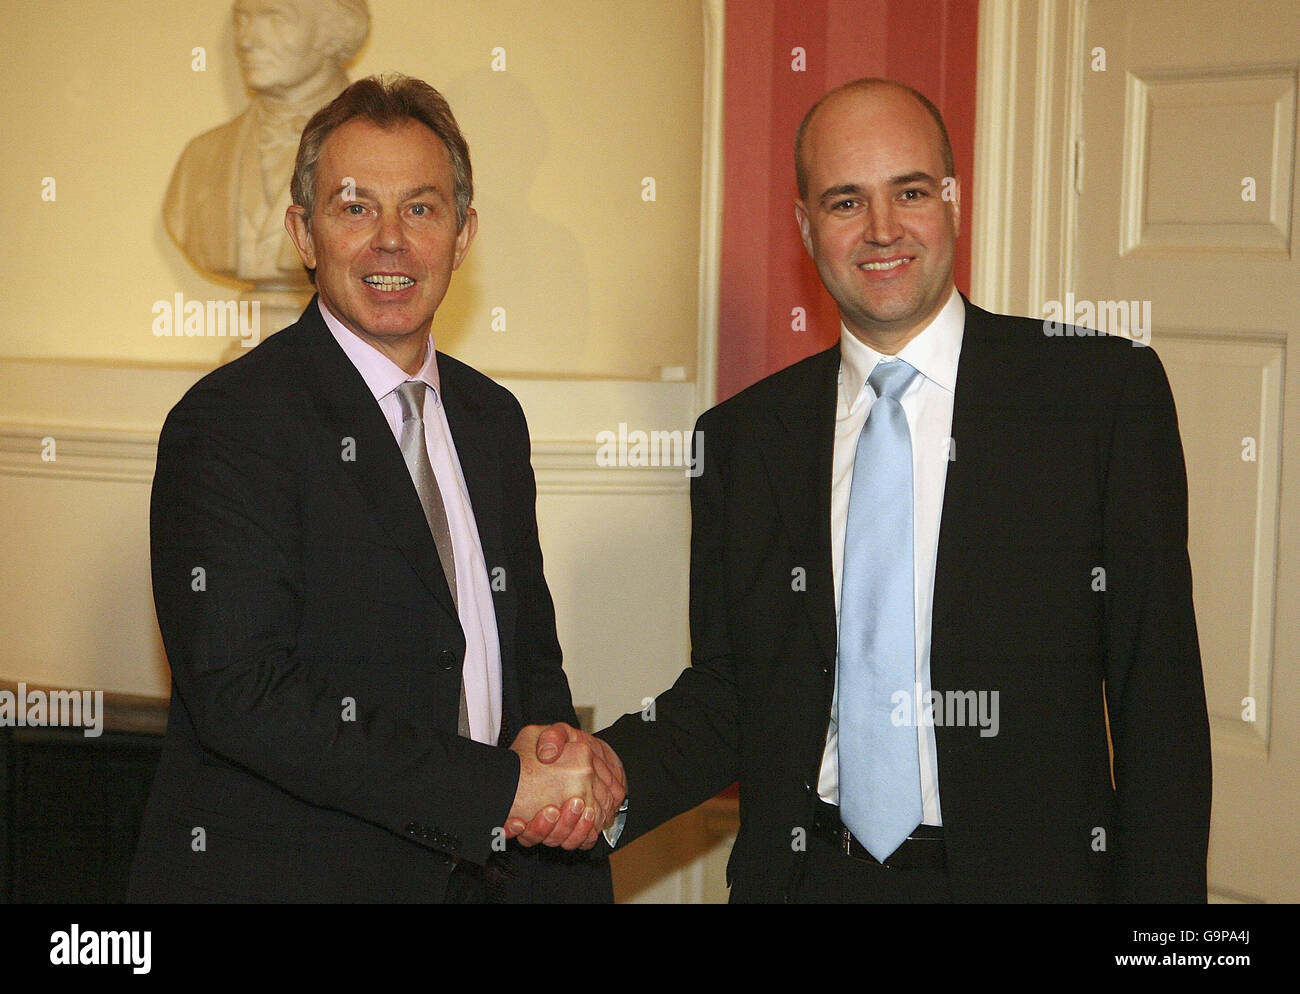 Der britische Premierminister Tony Blair (links) trifft sich mit dem schwedischen Premierminister Fredrik Reinfeldt in der Downing Street 10 in London. Stockfoto